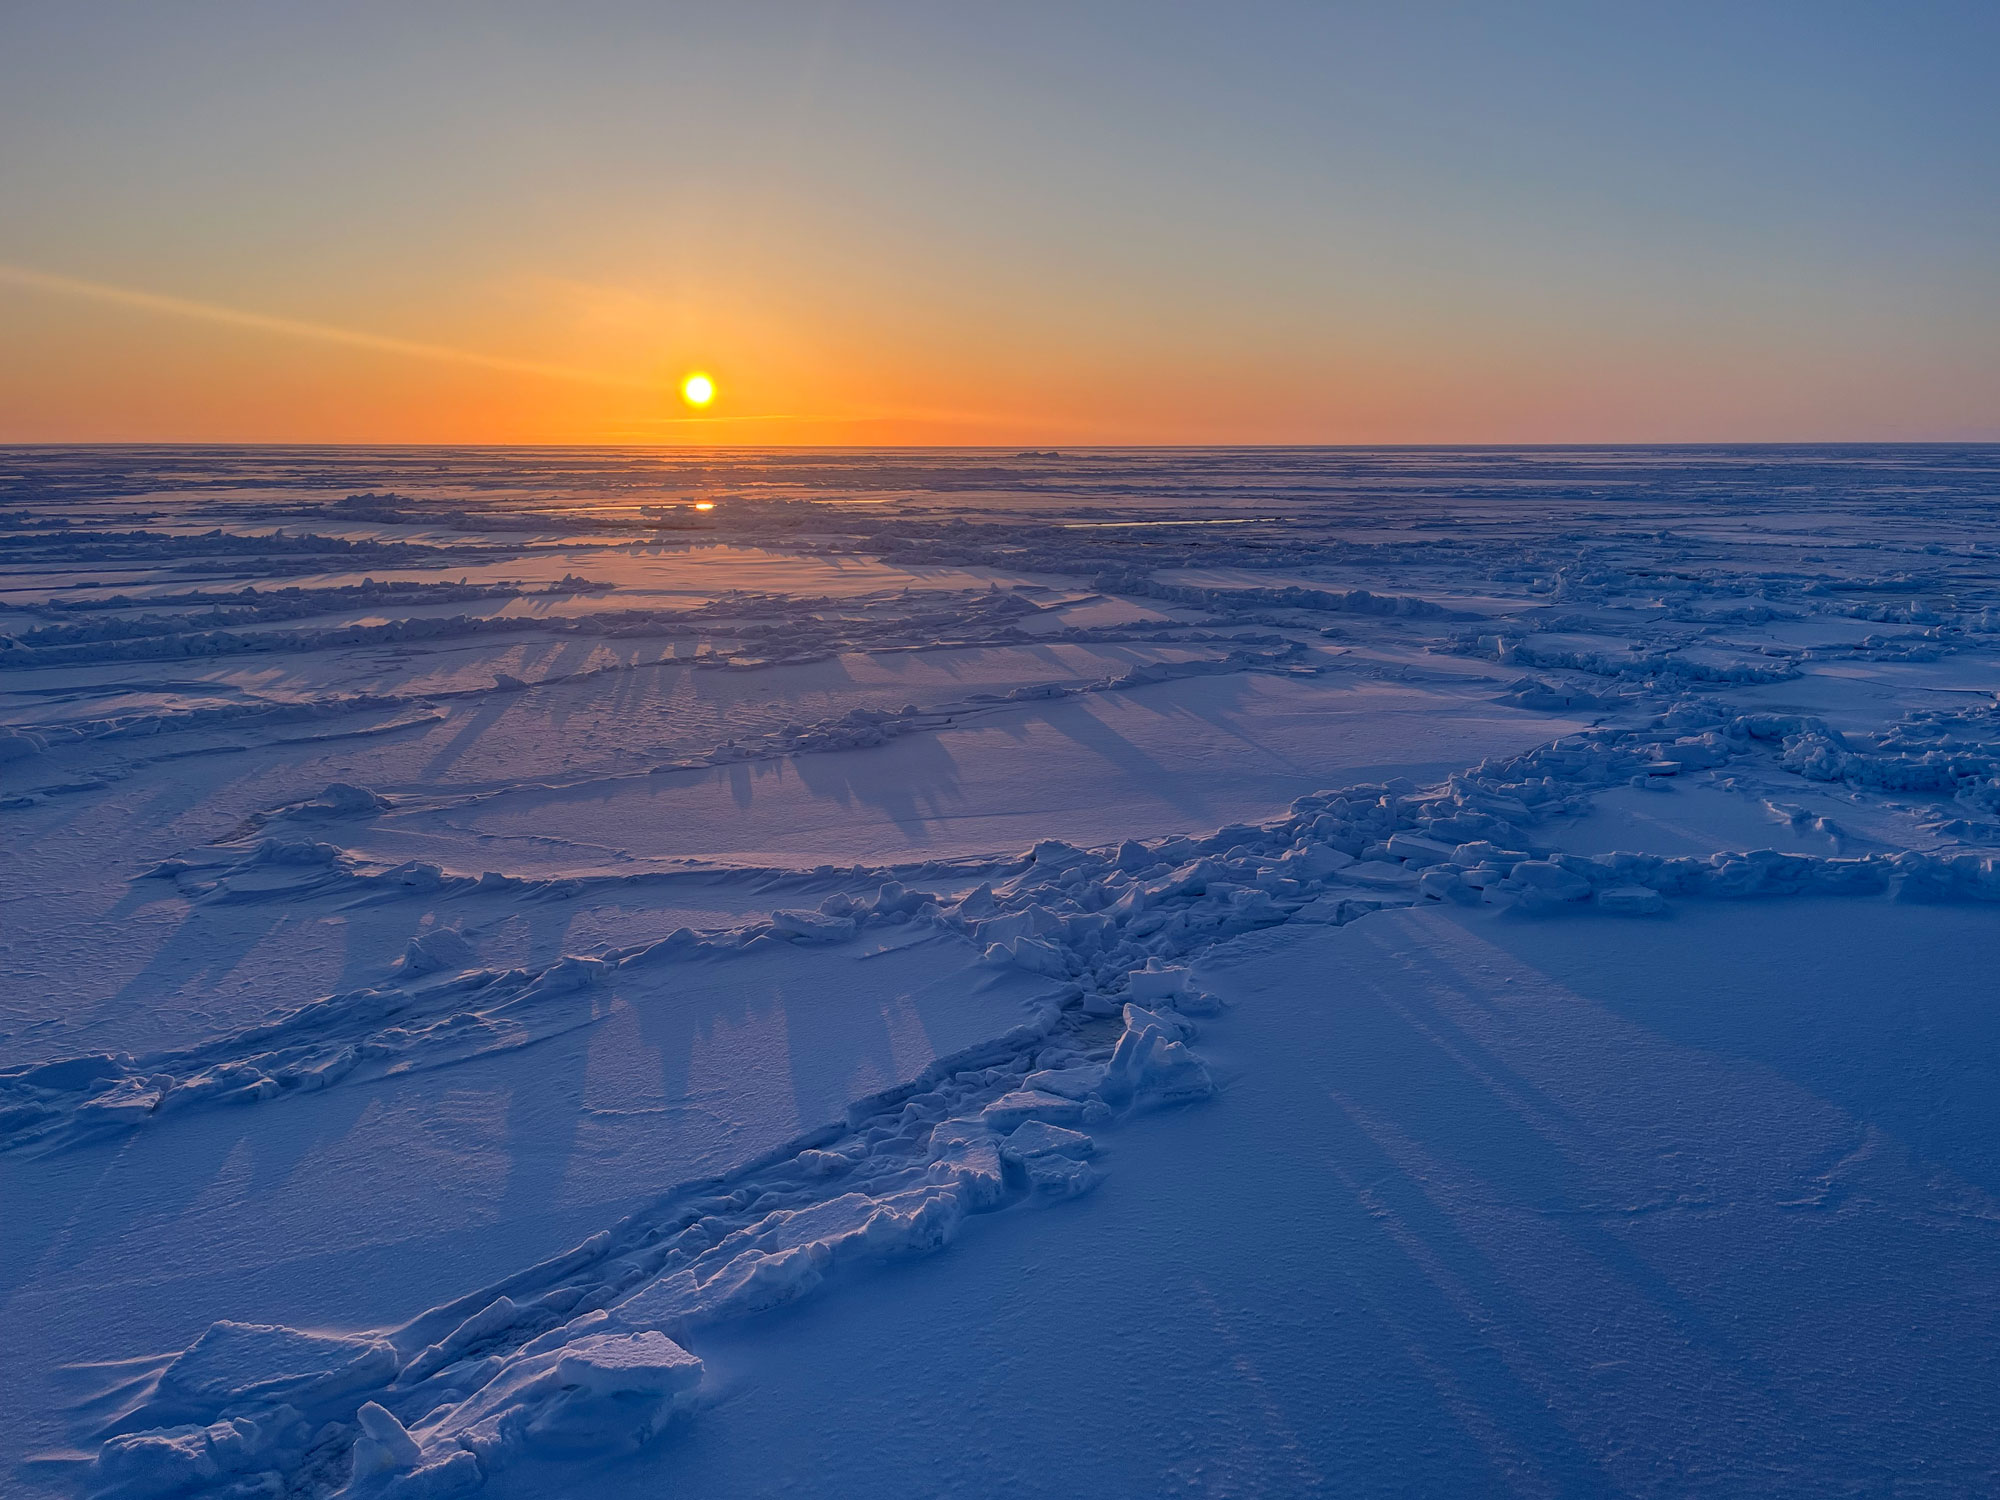 Solnedgang og havis oppdelt i store flak.